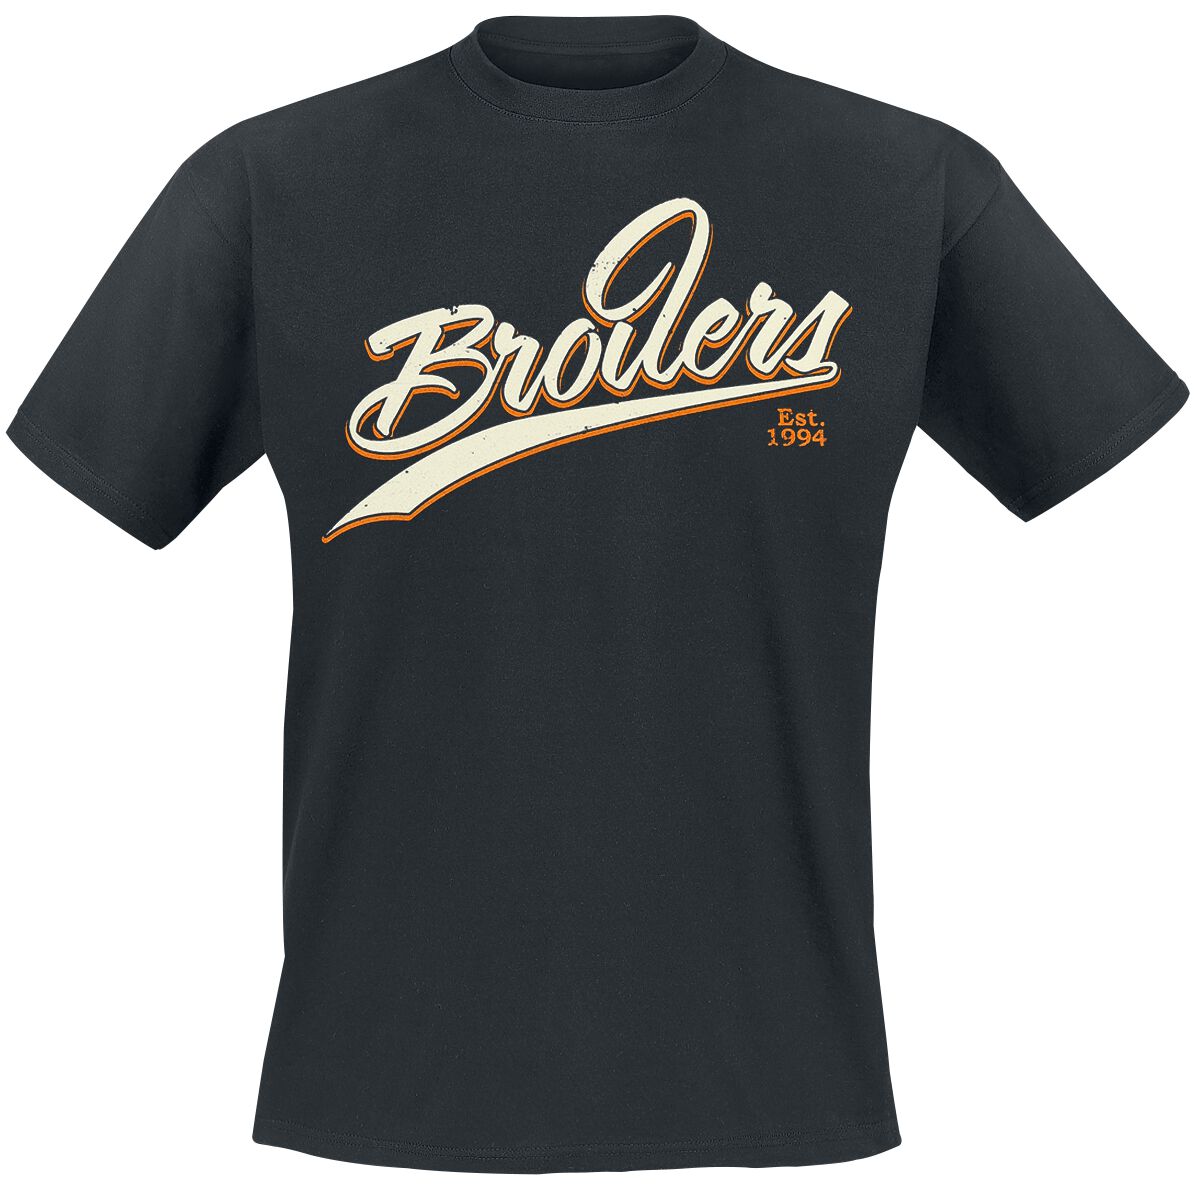 Broilers T-Shirt - League Of Its Own - M bis XXL - für Männer - Größe M - schwarz  - Lizenziertes Merchandise!